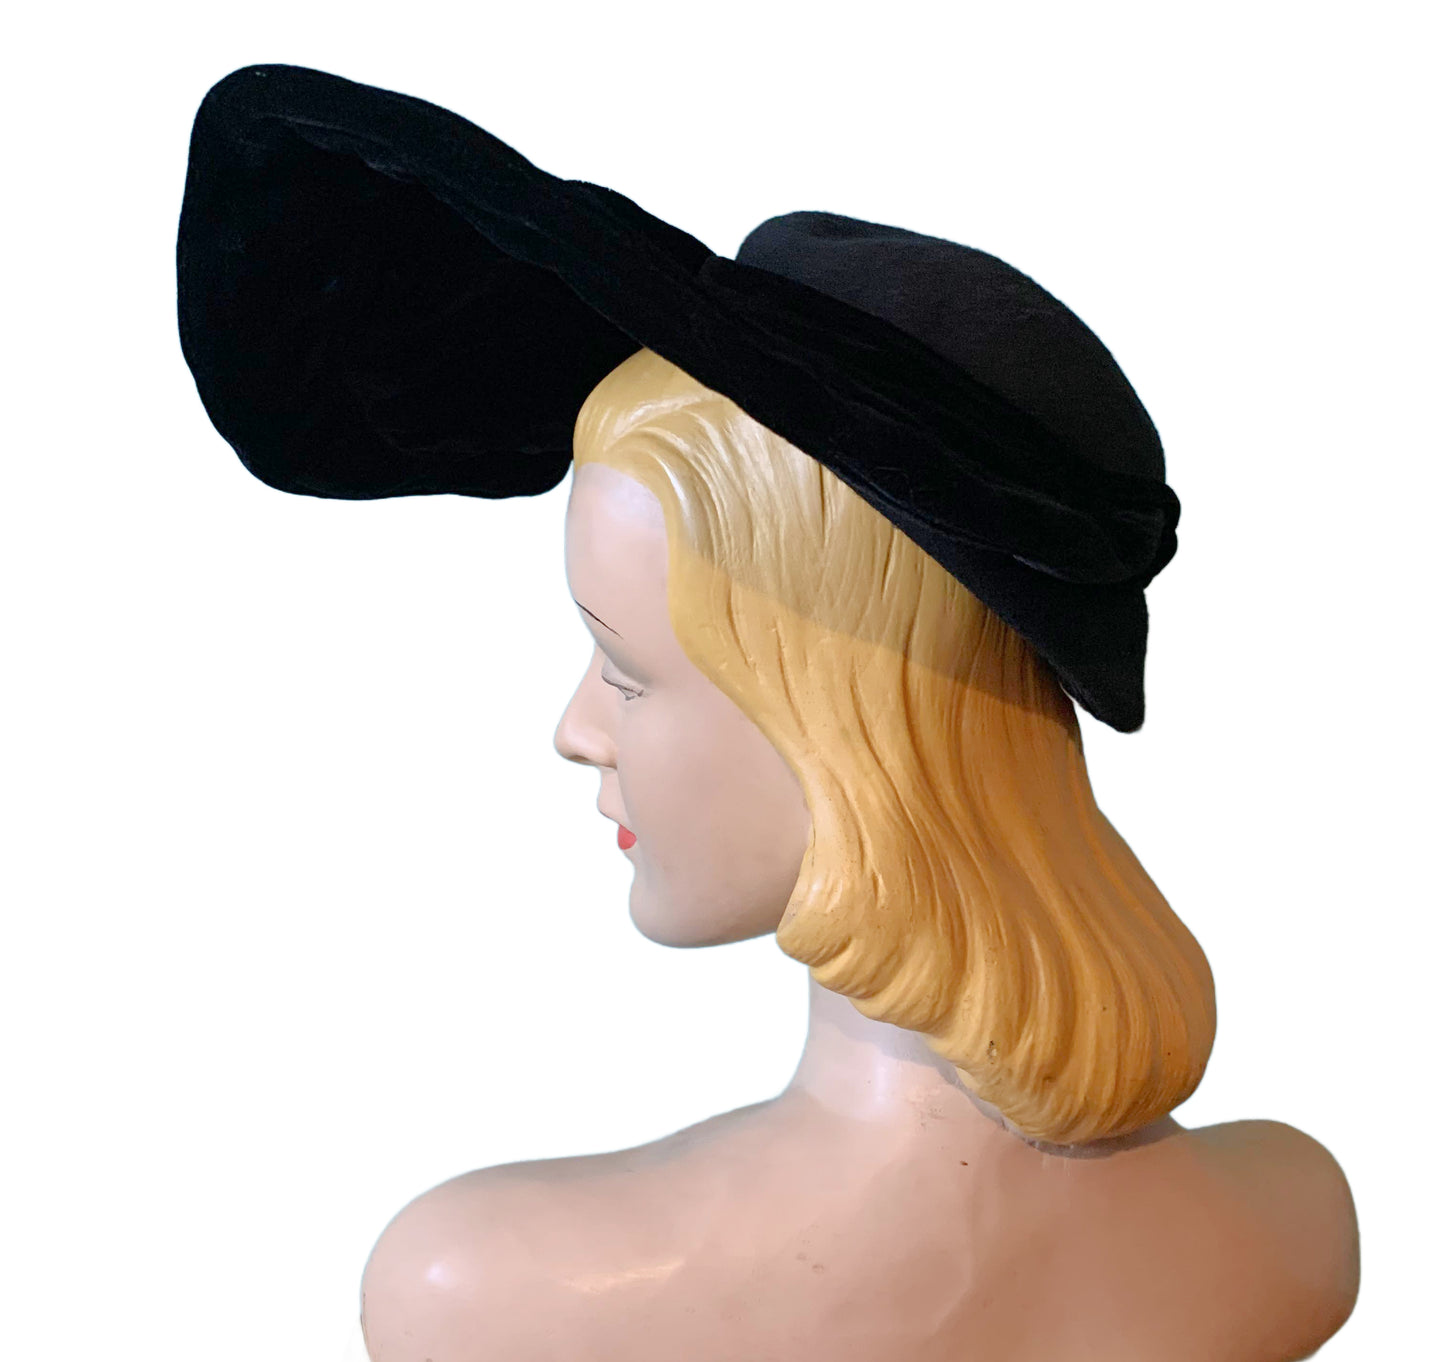 Black Velvet Hat with Wired Half Round Wide Brim circa 1940s